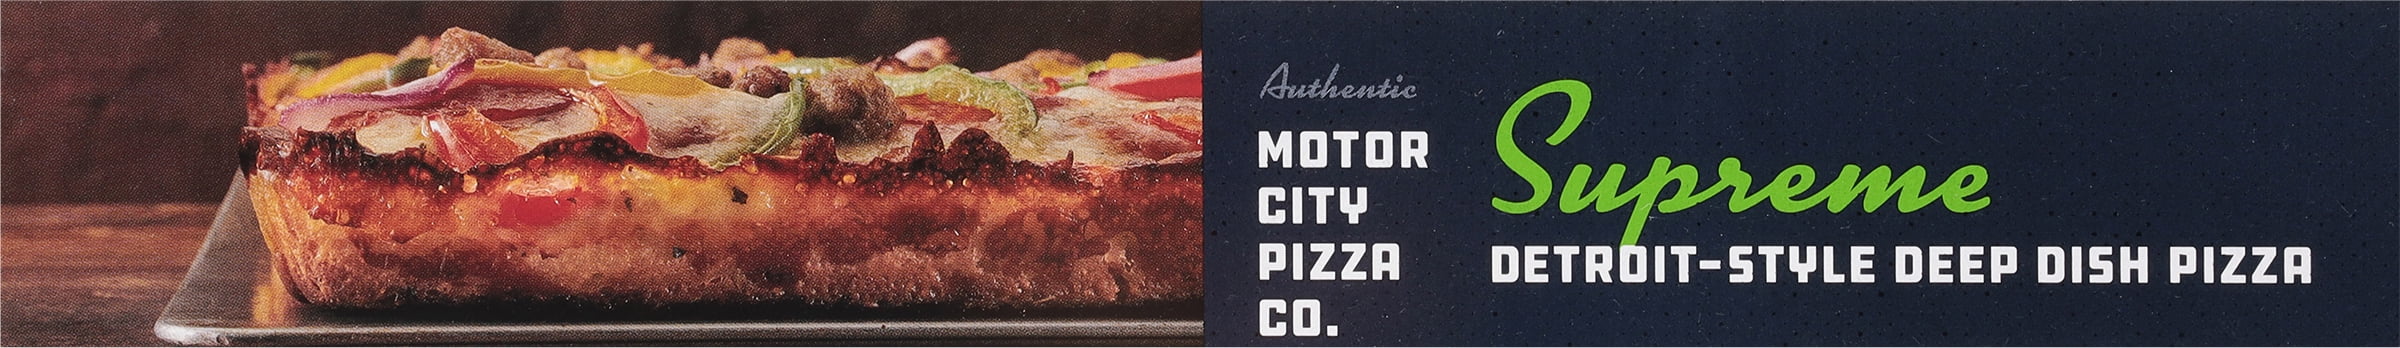 1086 - Hamilton Beach Pizza Maker/ Motor City Pizza Co. SUPREME